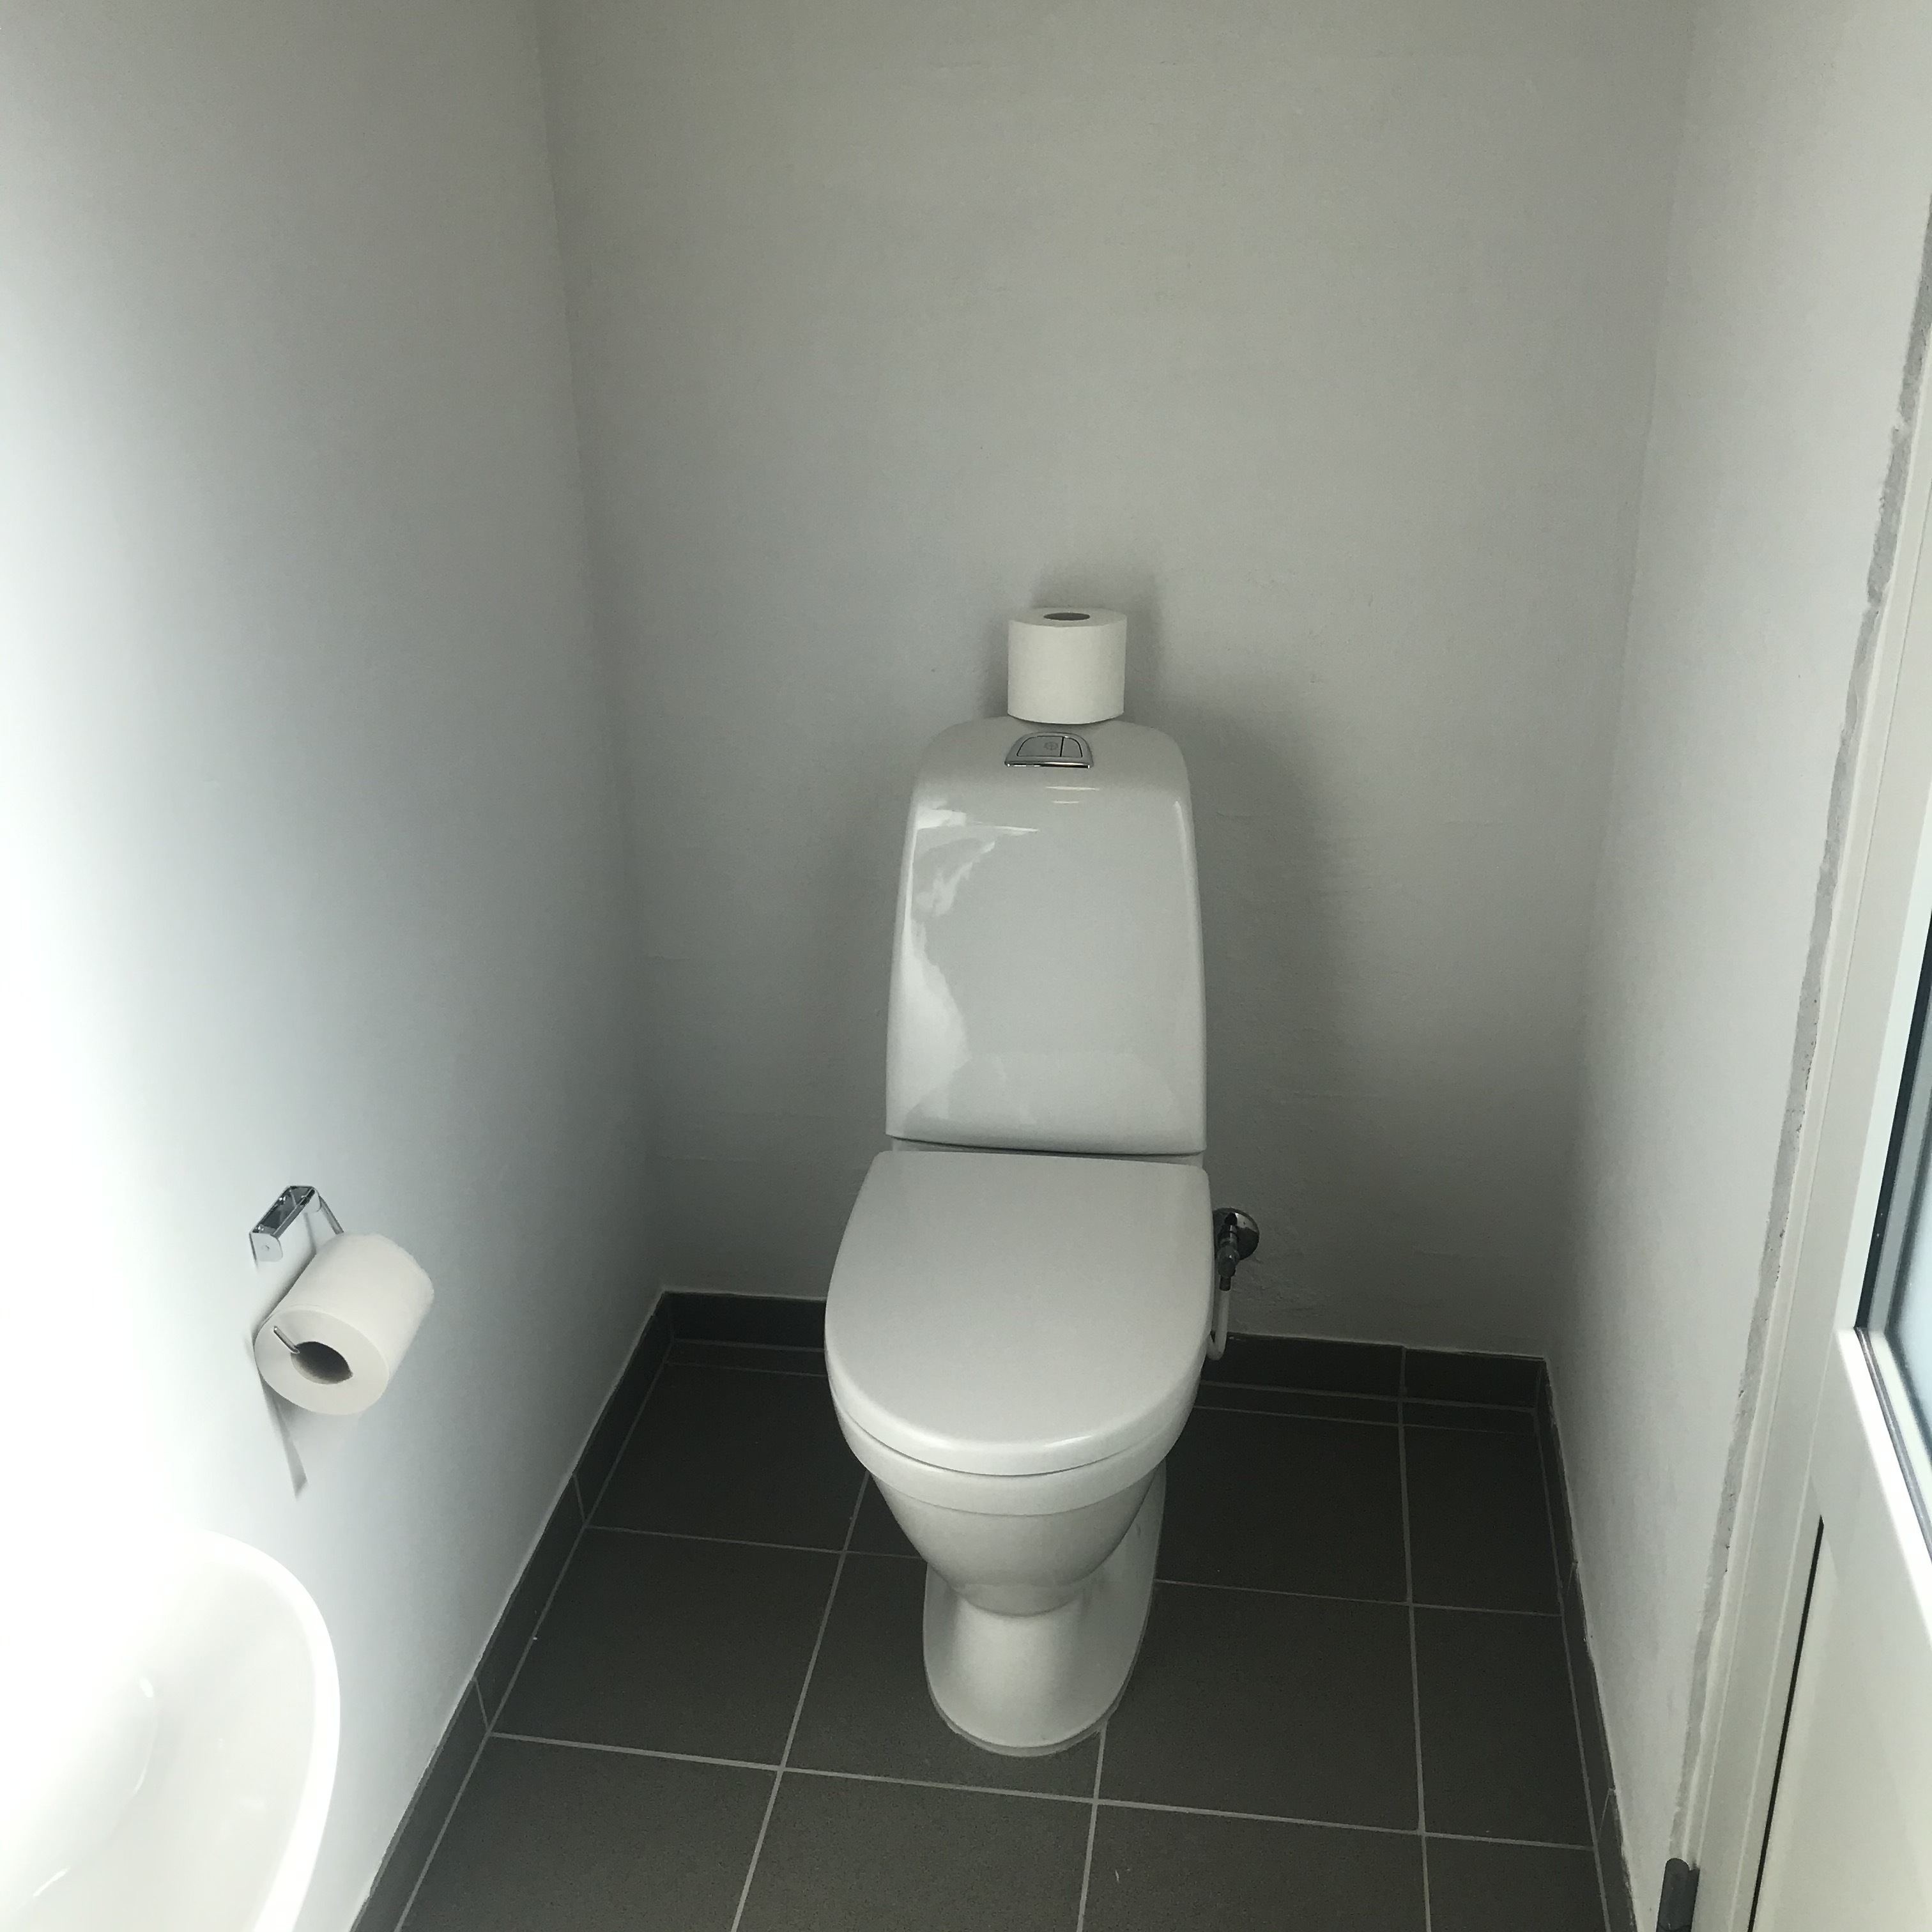 77 Anneks: Bad/toilet med adgang udefra - Billede 2 af 2